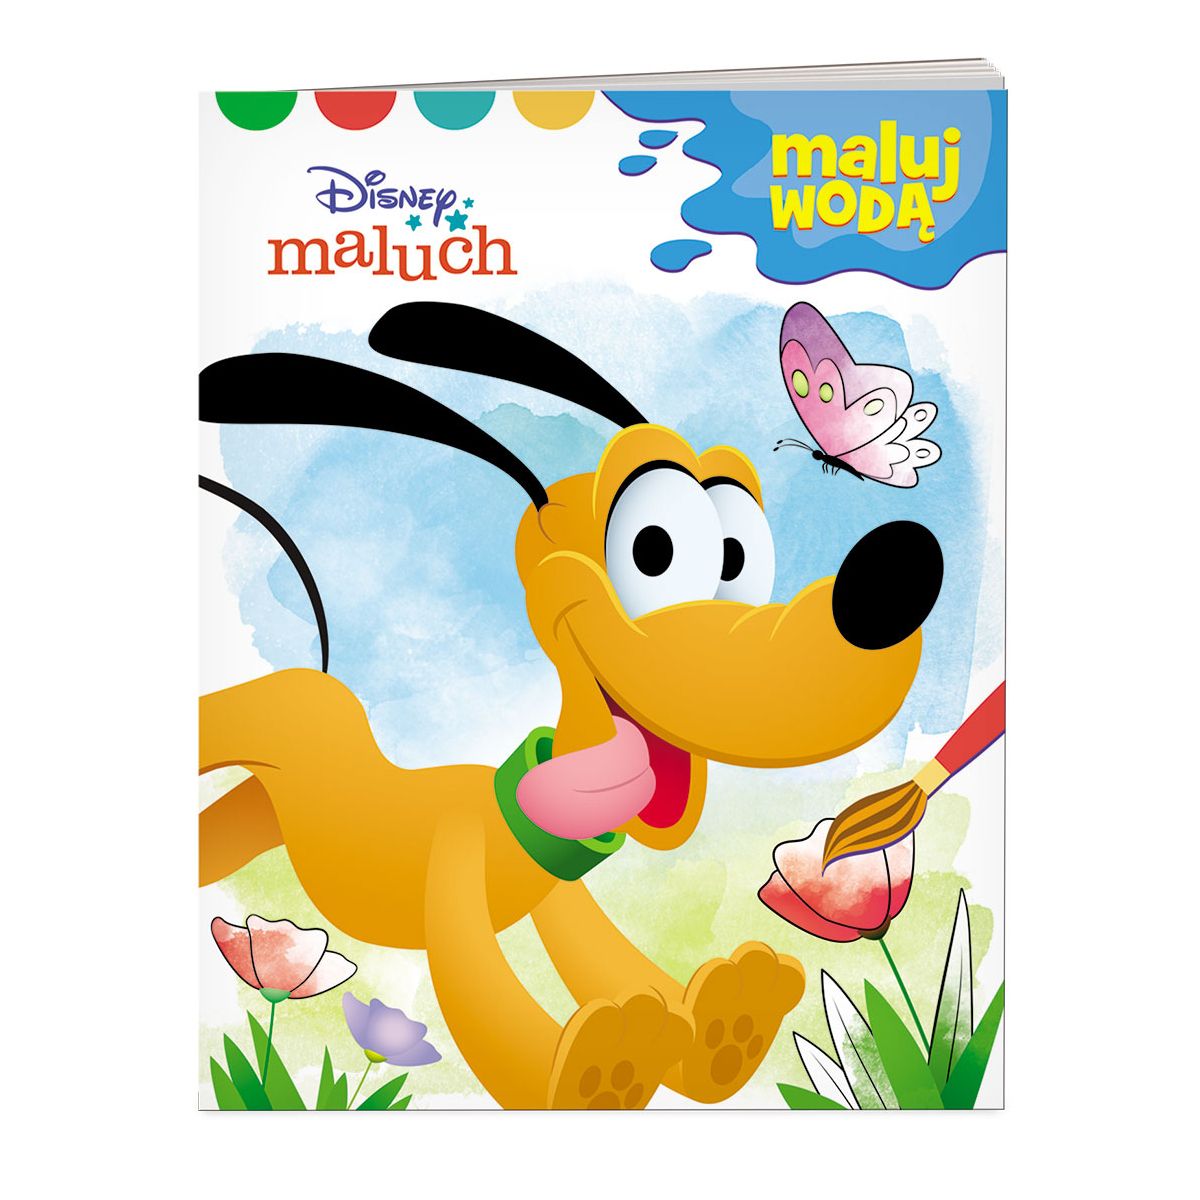 Książka dla dzieci Disney Maluch. Maluj wodą wodna Ameet